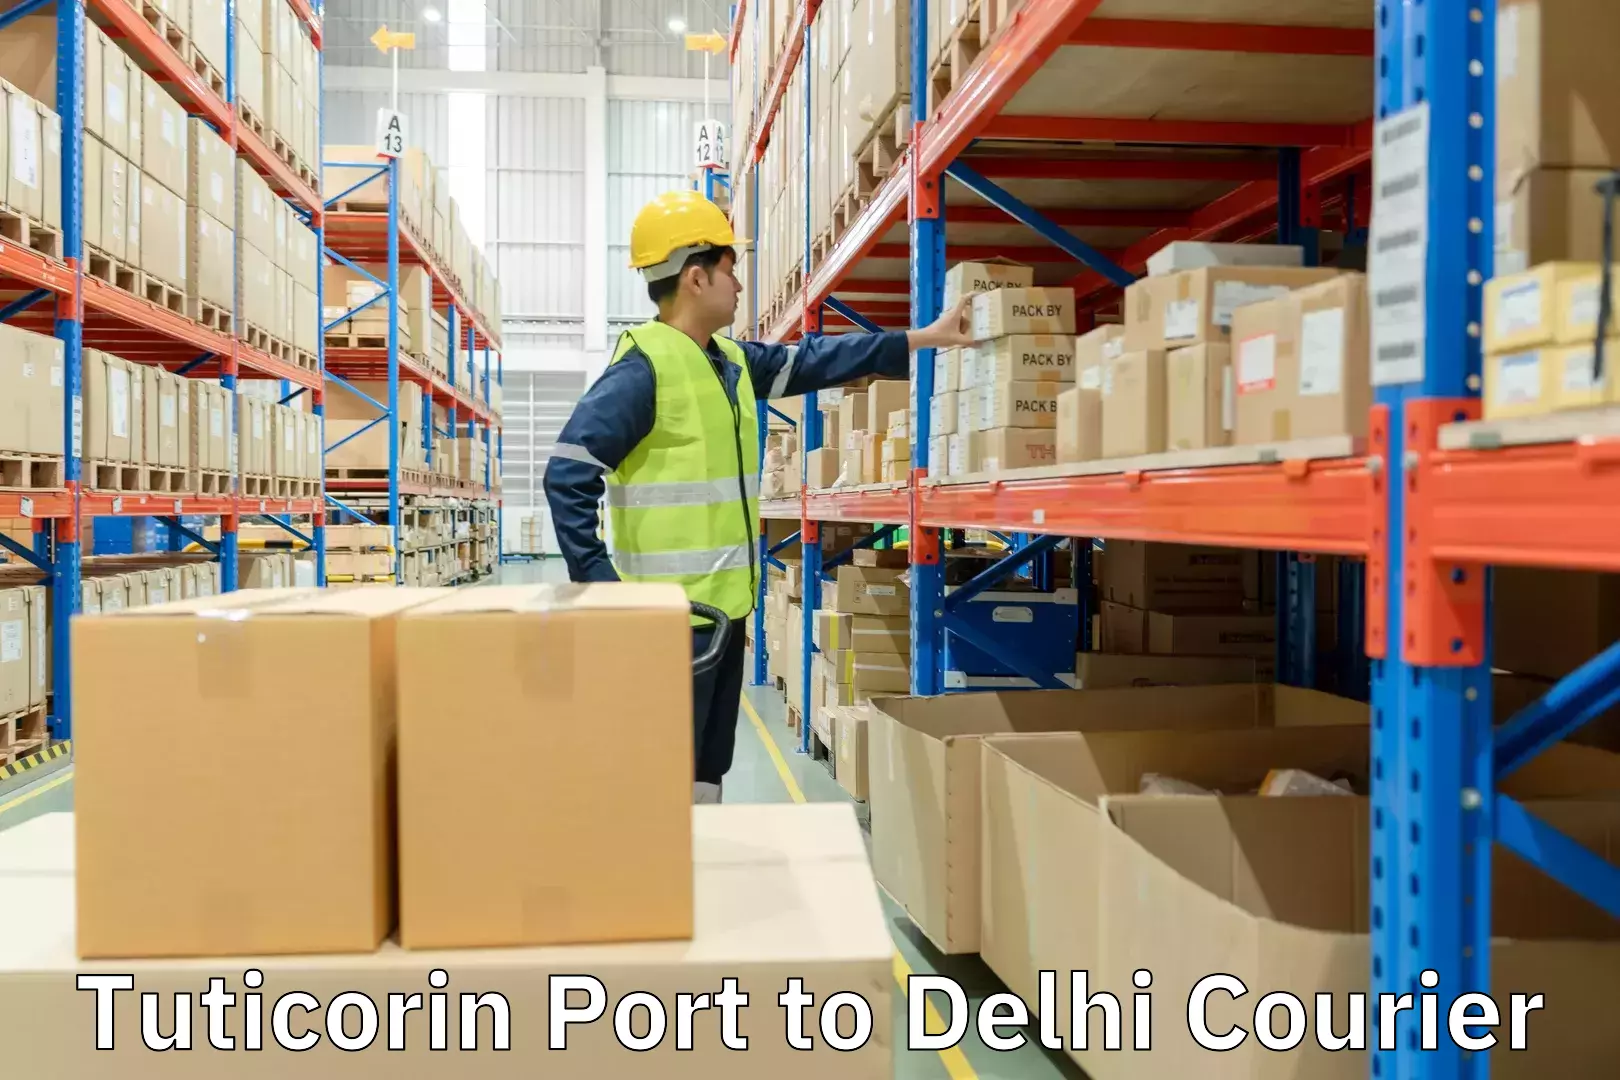 Courier service comparison Tuticorin Port to Delhi